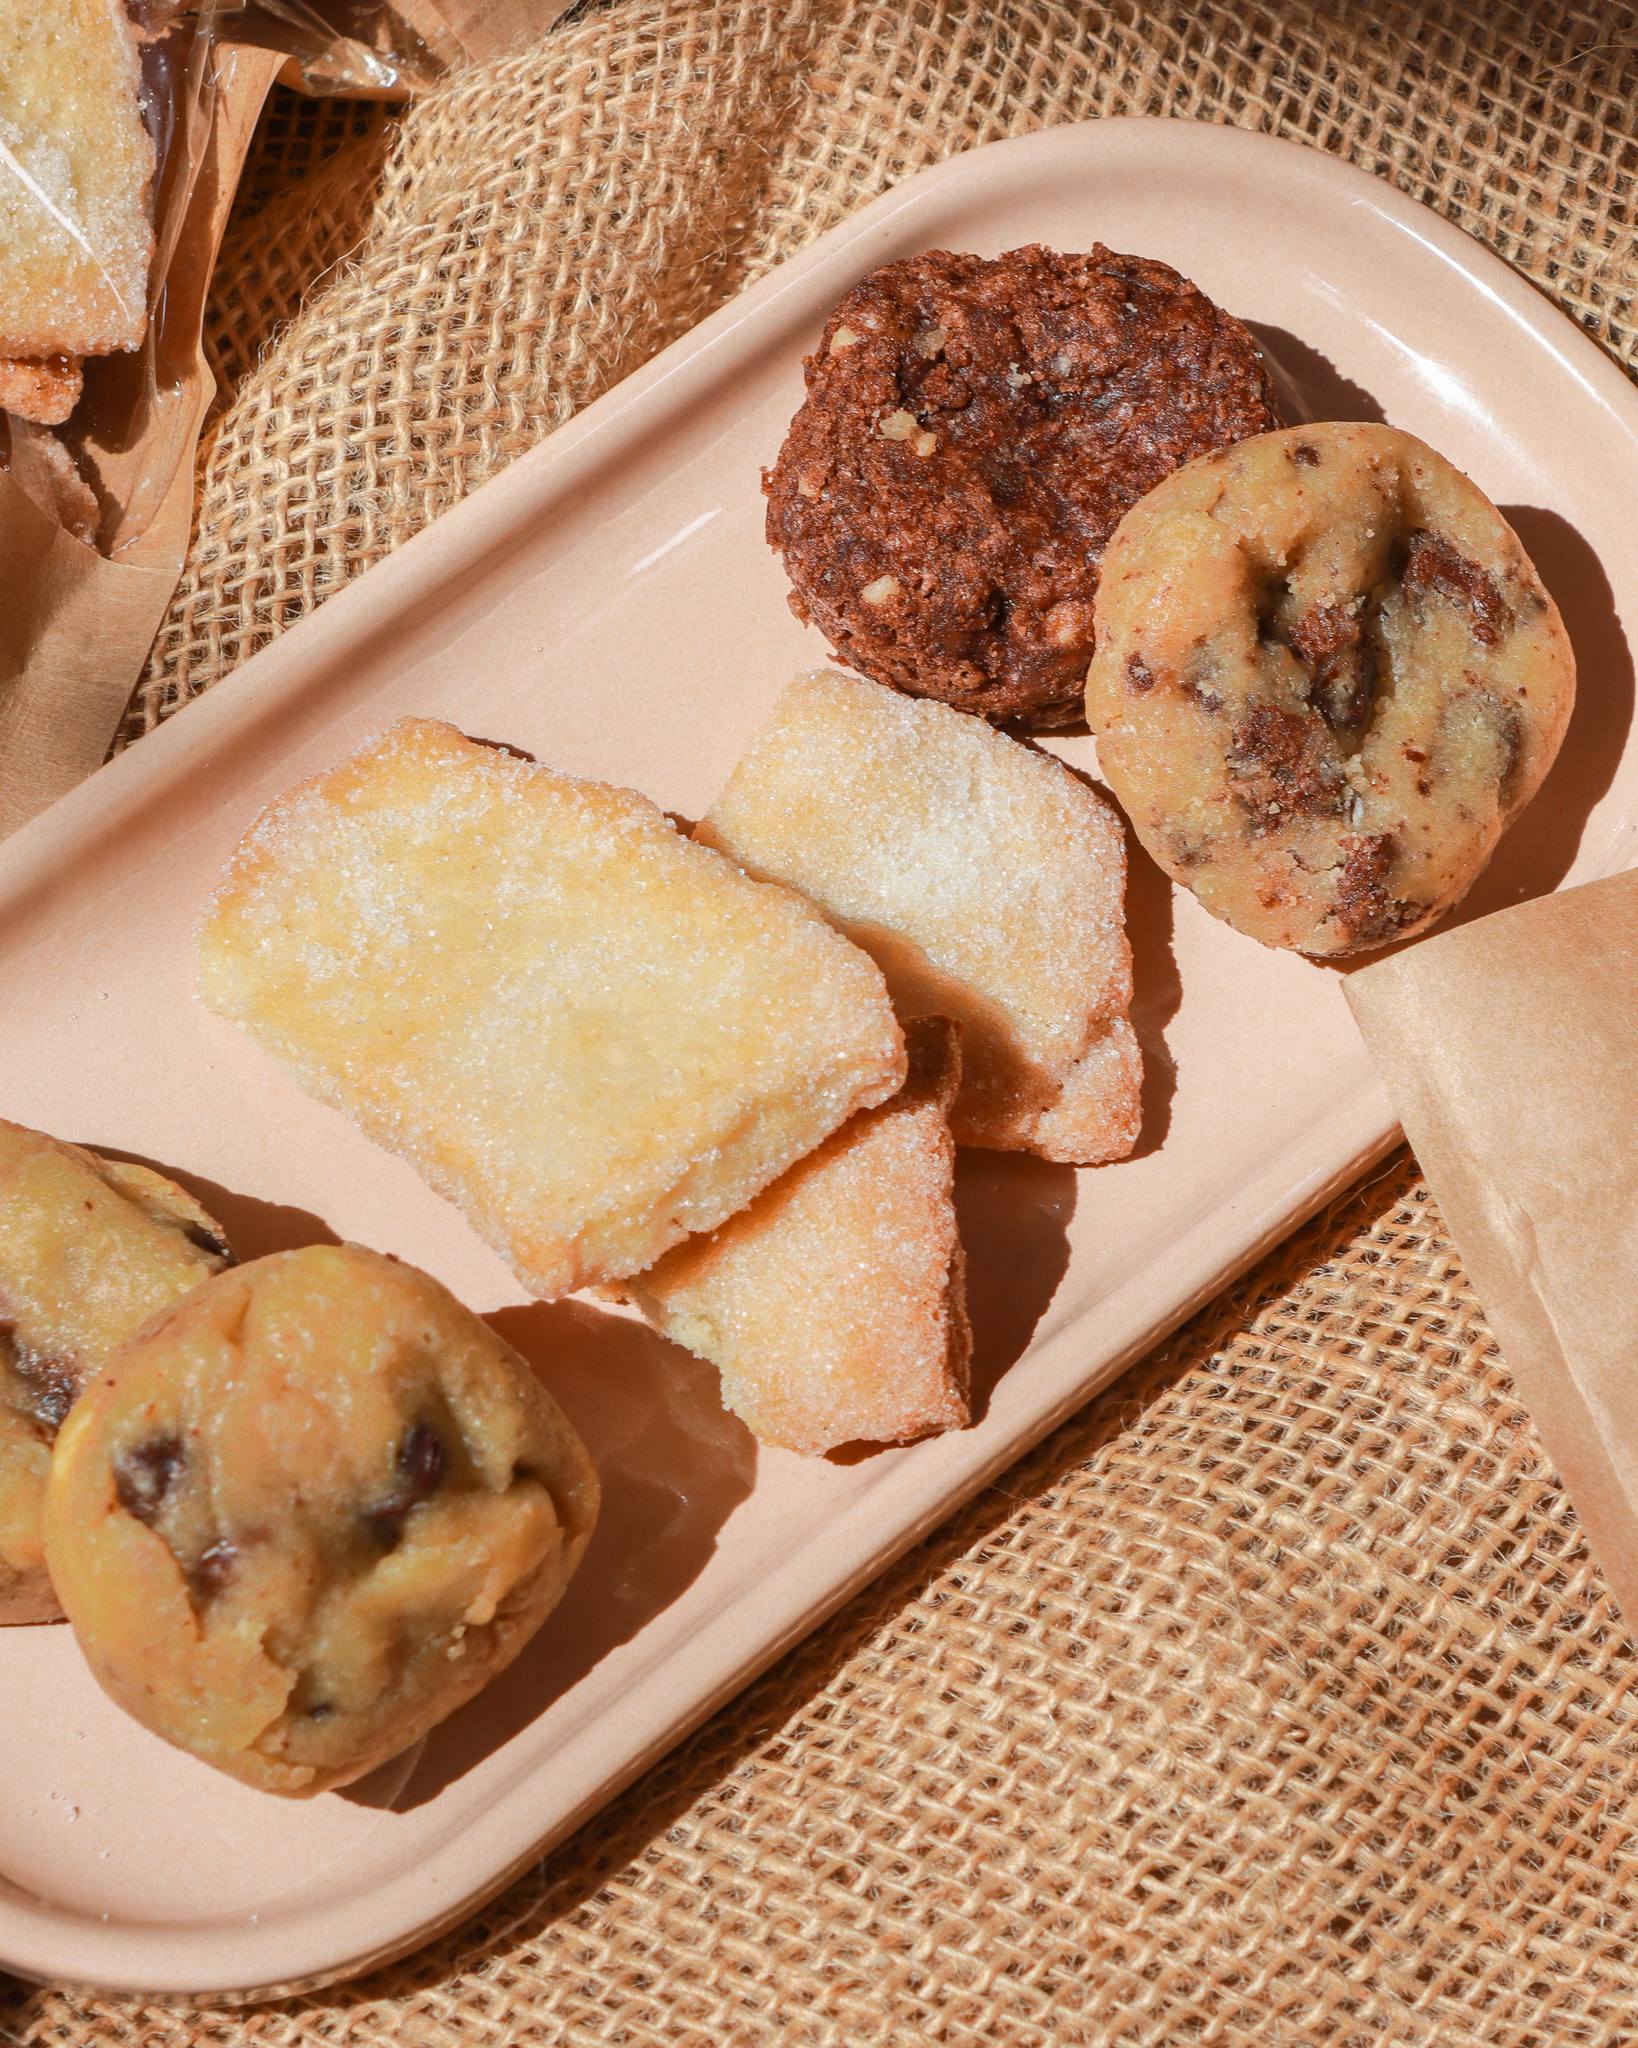 Vous les avez tous testés nos cookies ? Et nos croquants sucrés ?
UNE TUERIE !!! 

🍪 Faits maison à Gémenos (13)
📍Disponibles dans plusieurs points de vente
💌 Plus d’infos sur notre site web (lien dans notre bio)

#CookiesGiraudon #Bonheur #CookiesAvecAmour #GourmandiseAuthentique #homemadewithlove #CookiesArtisanaux #FaitAvecAmour #Gémenos #CuisineArtisanale #marseille #MadeInFrance